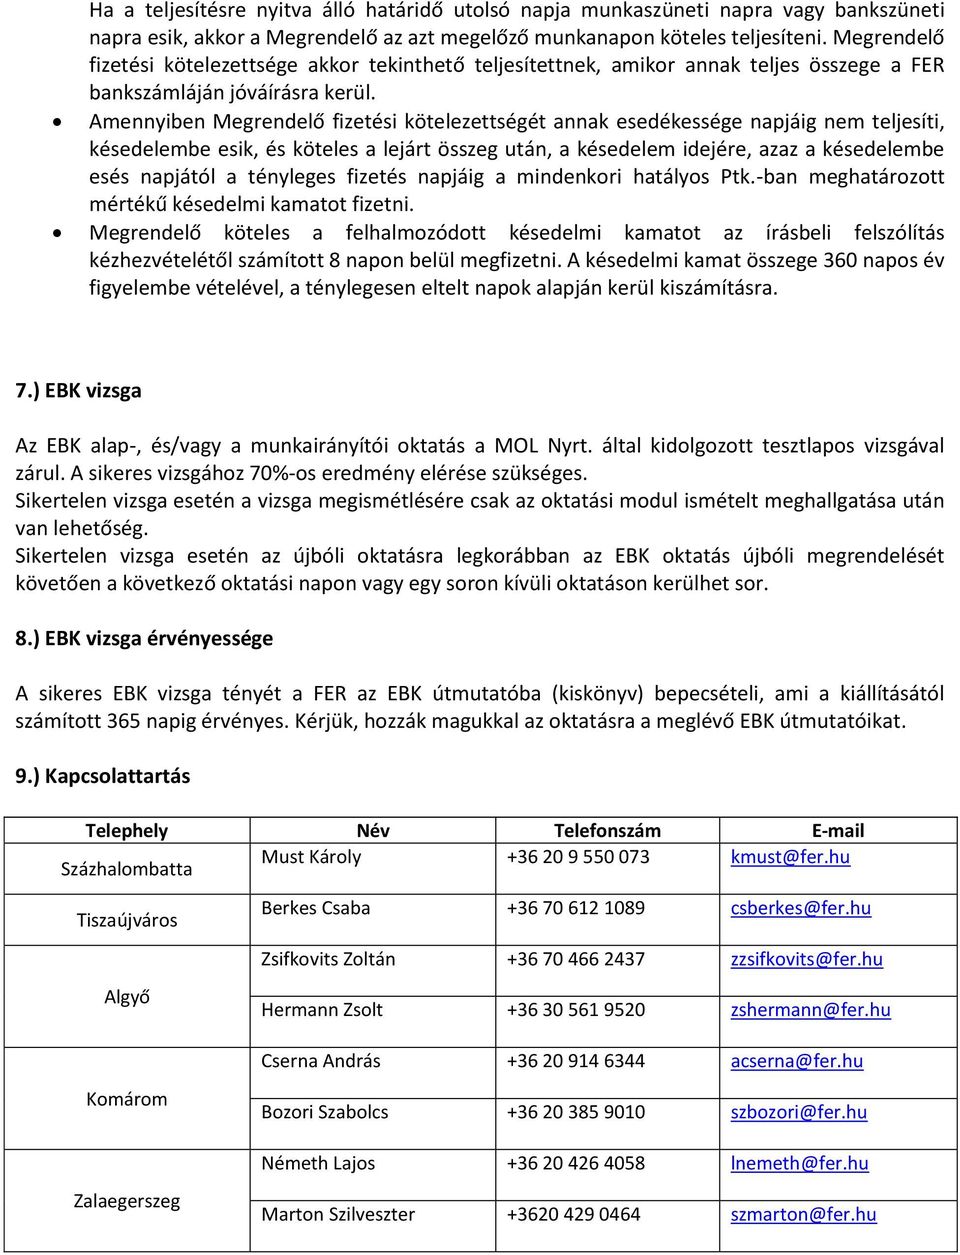 TÁJÉKOZTATÓ. A MOL Nyrt. (Százhalombatta, Tiszaújváros, Zalaegerszeg, Algyő  és Komárom) területén tartott EBK oktatásához. - PDF Free Download